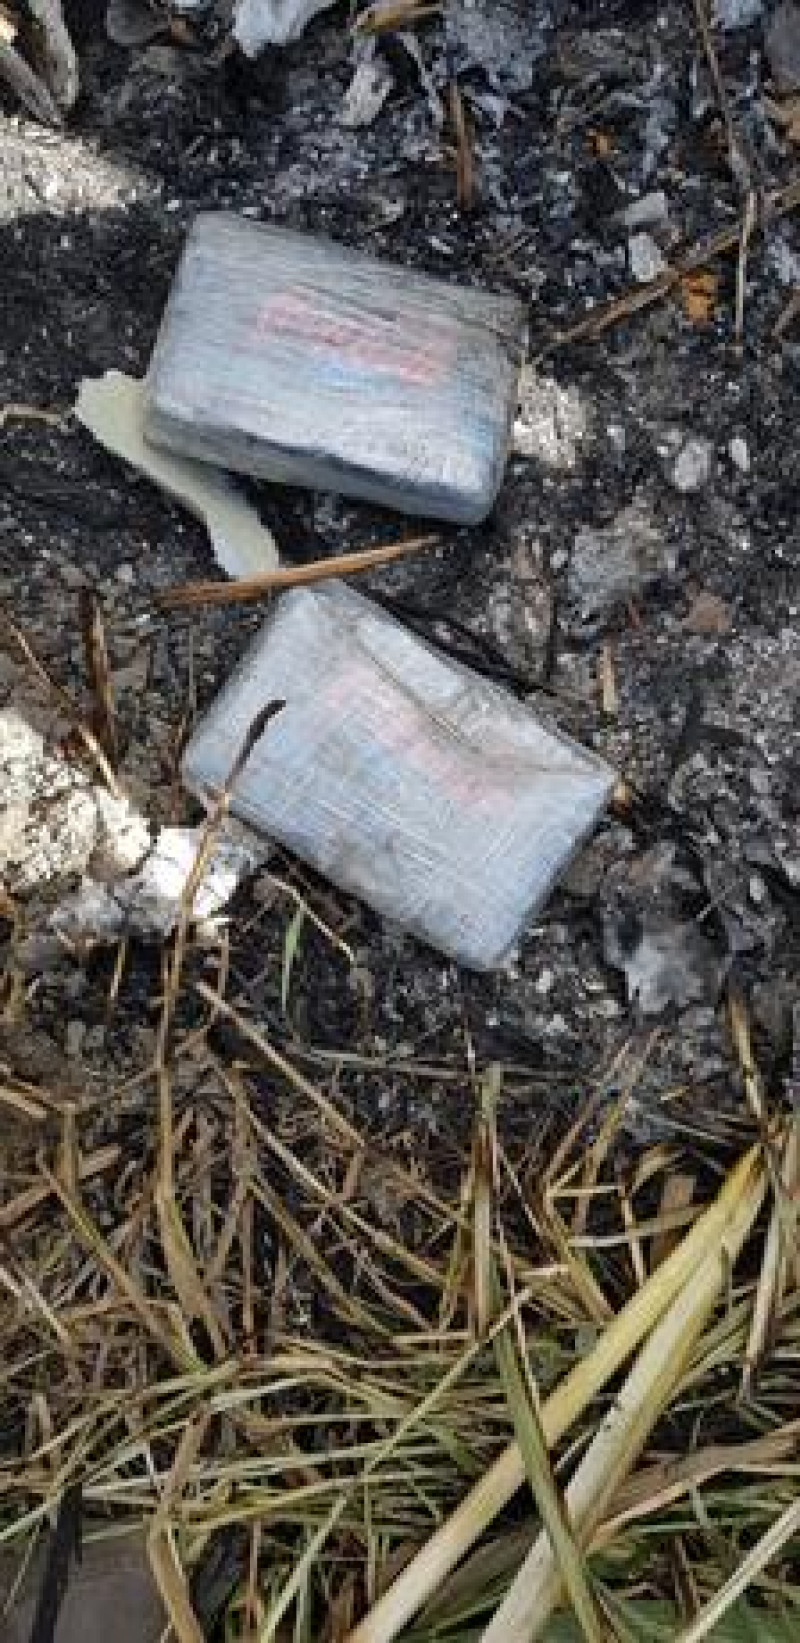 3 de diciembre de 2019. Varios paquetes, presumiblemente de drogas, encontrados en donde se estrelló avioneta en un cañaveral de Monserrate, Tamayo (Bahoruco).